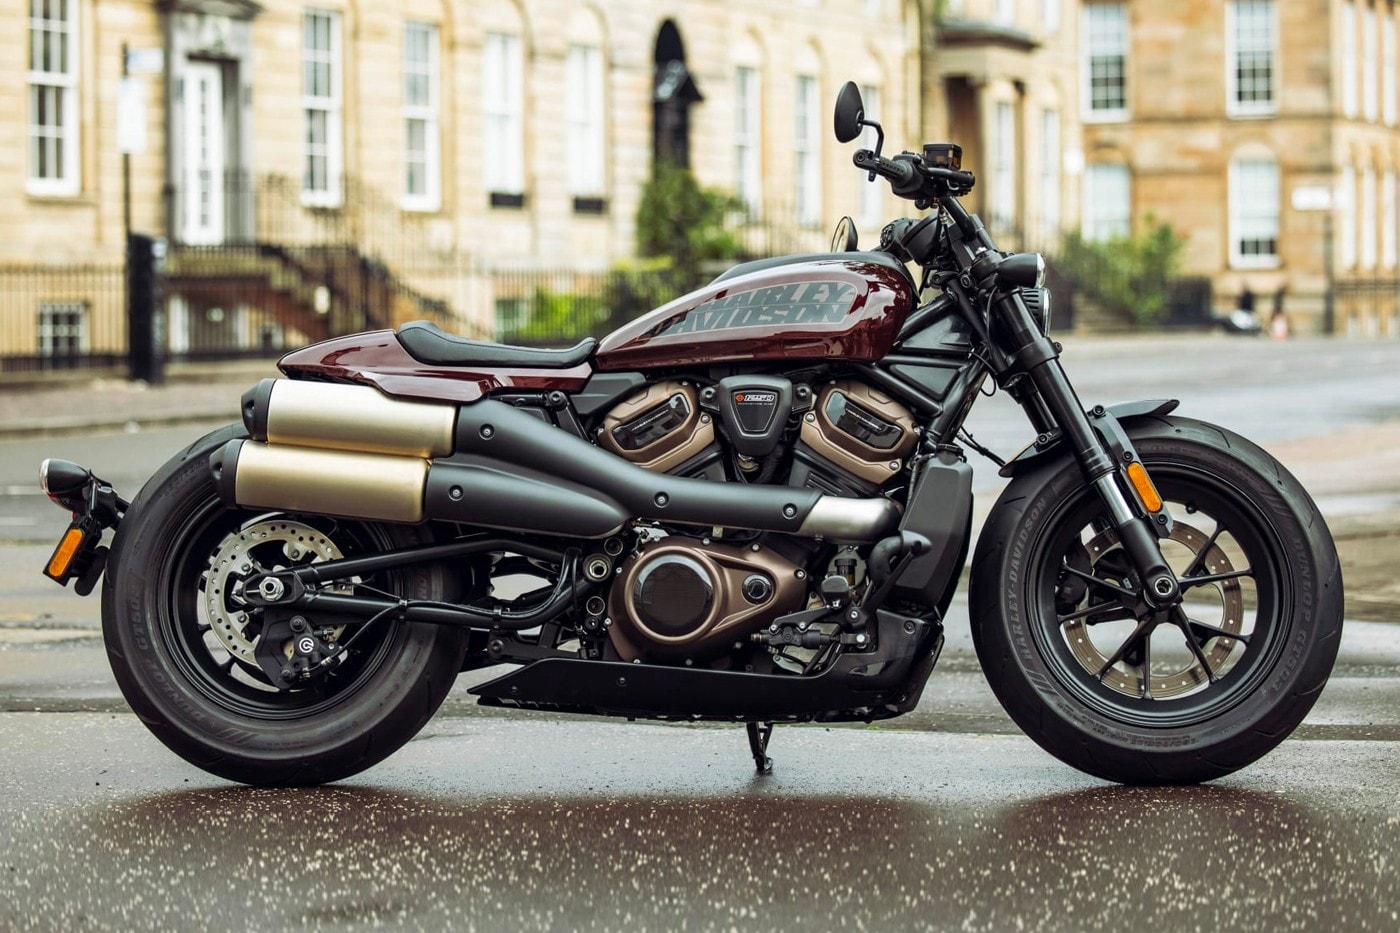 Harley Davidson 發表全新 2021 Sportster S 車款